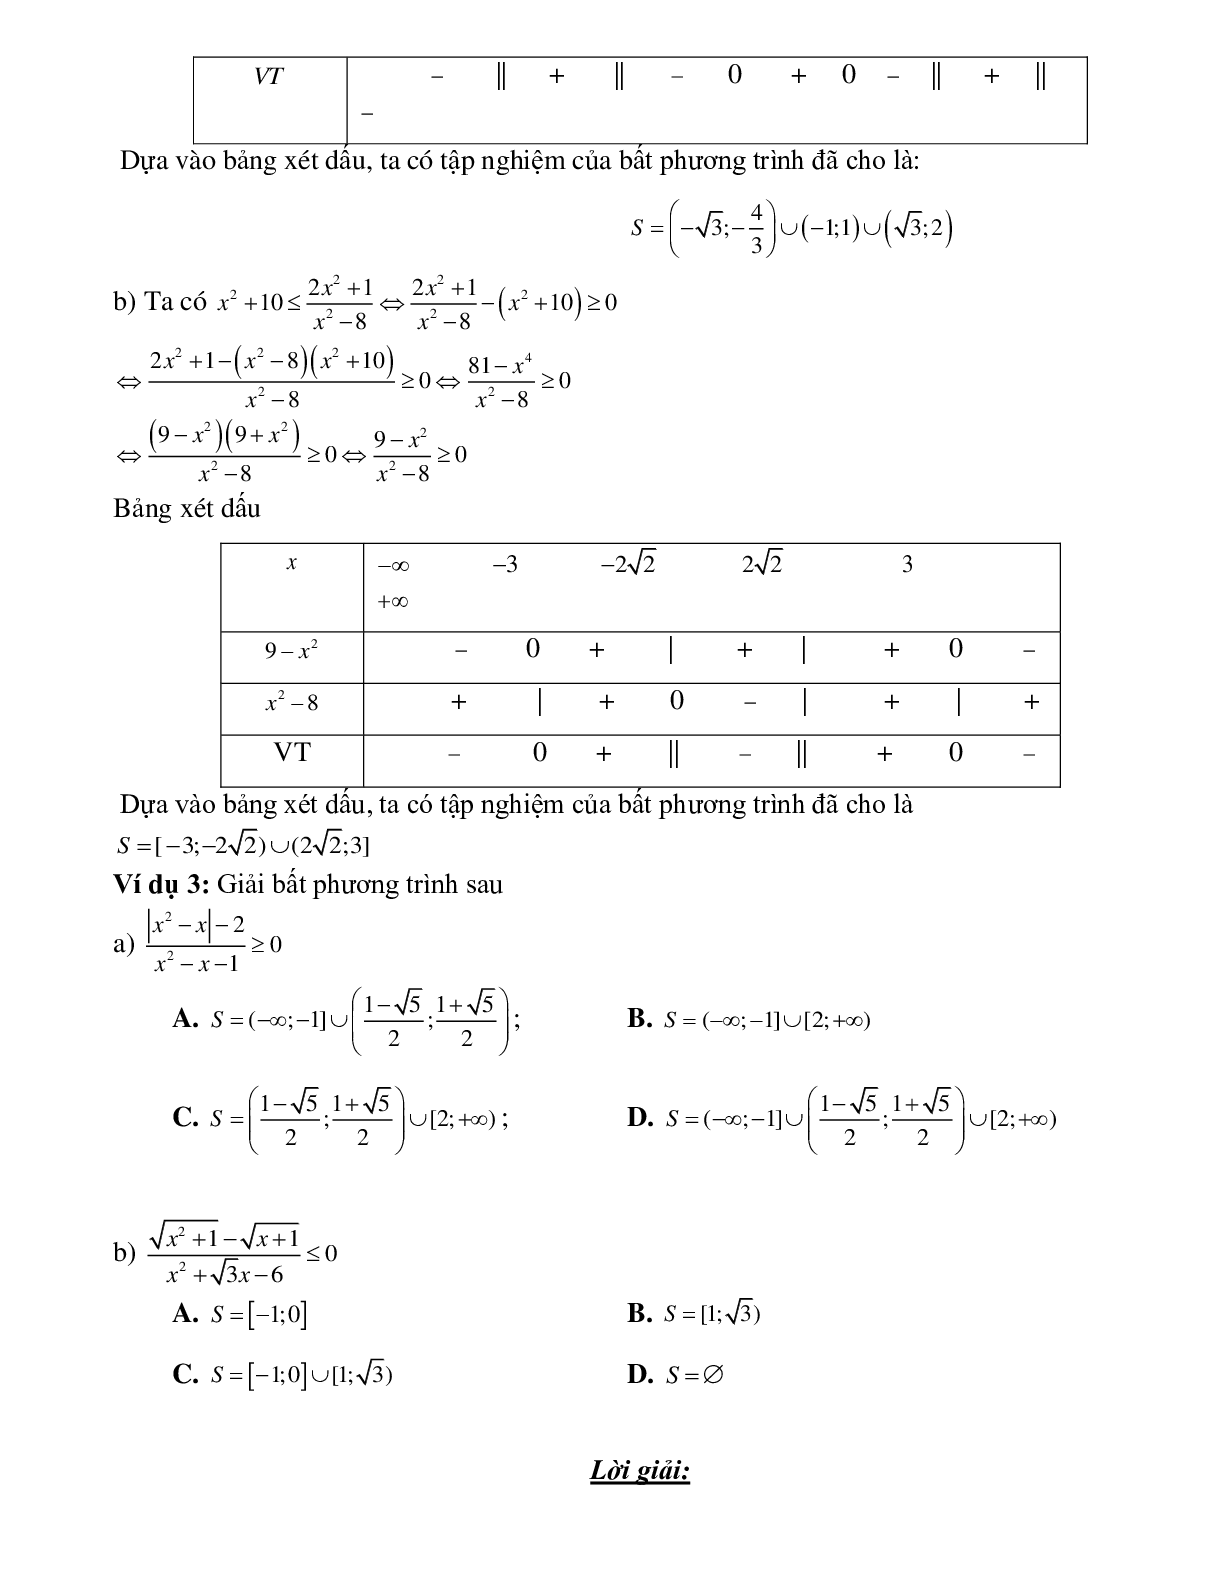 Bài tập giải bất phương trình tích và bất phương trình chứa ẩn ở mẫu  Toán 10 (trang 3)